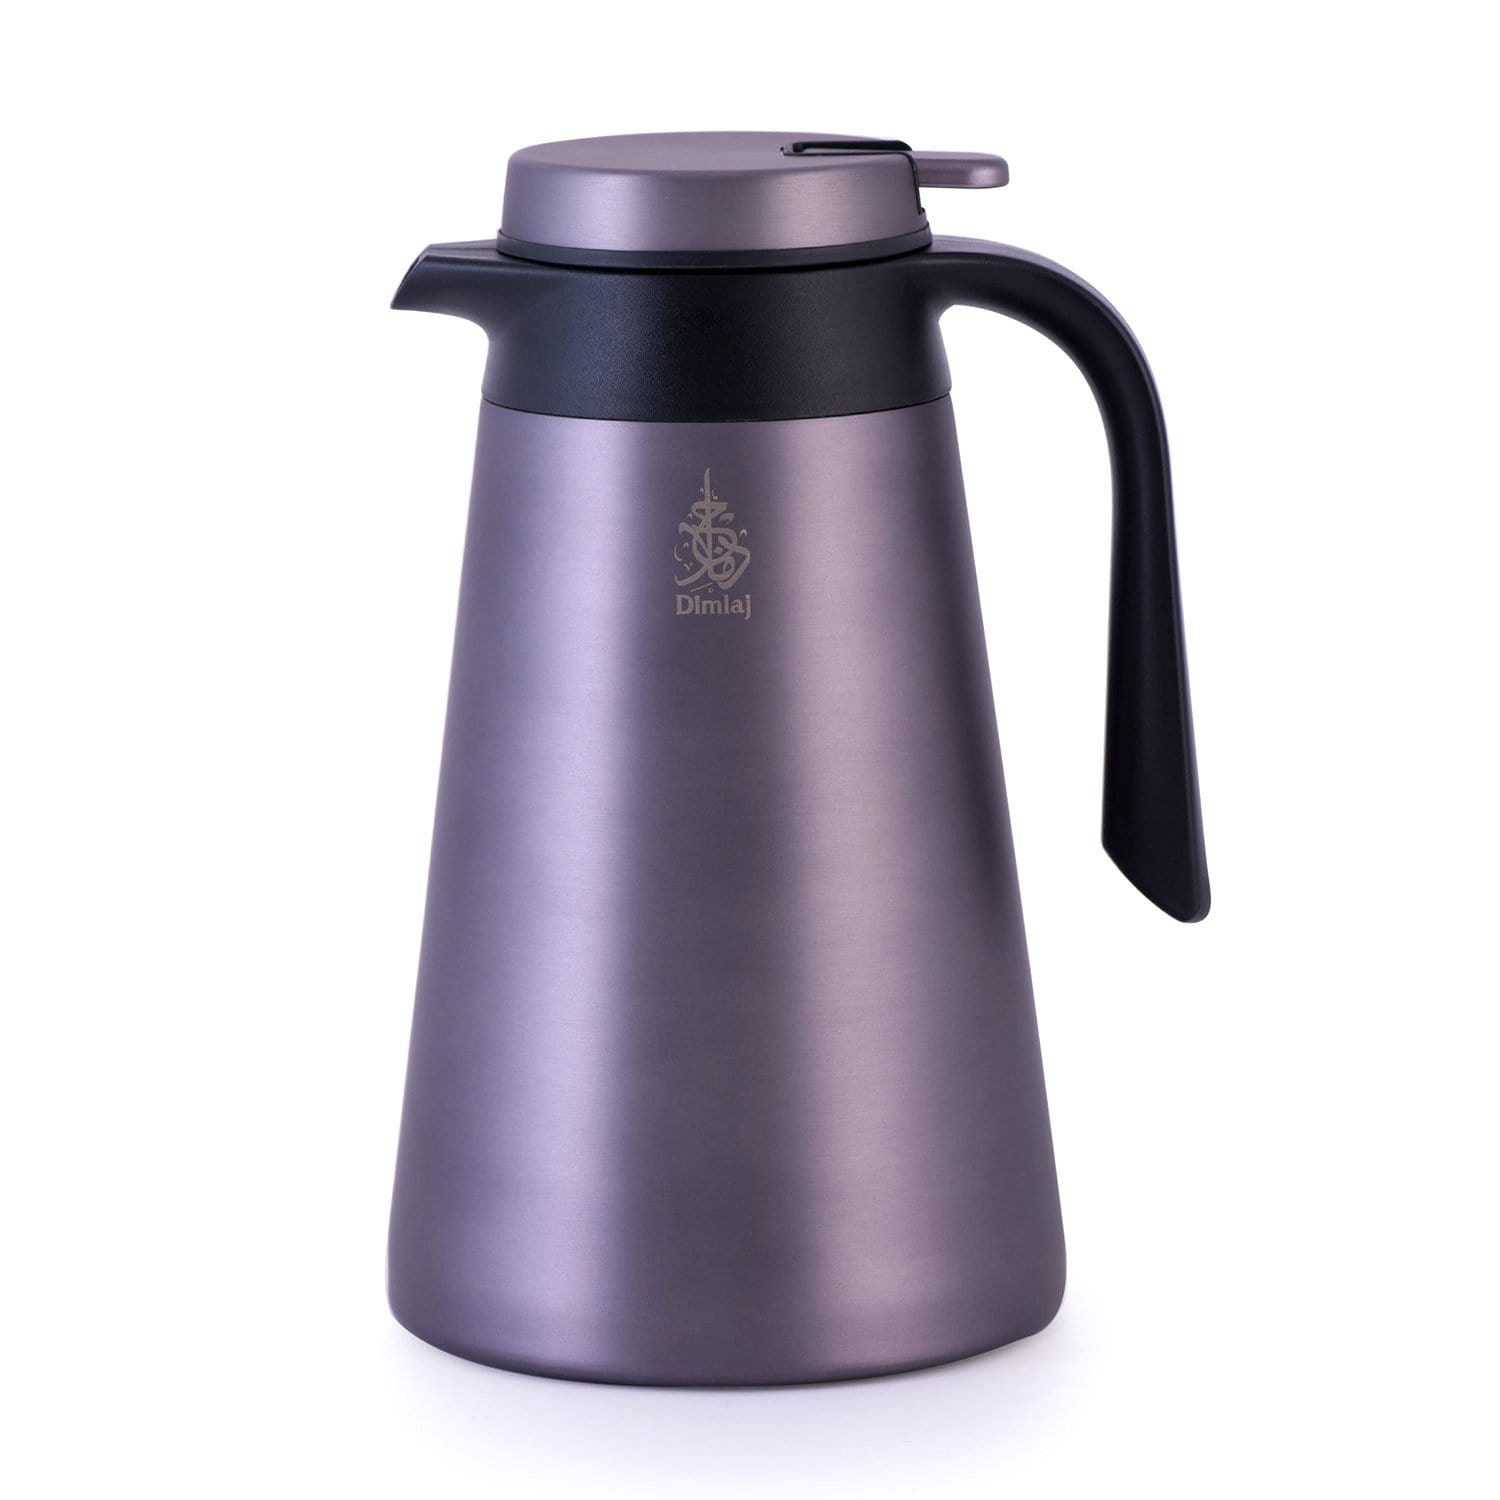 Dimlaj Vacuum Flask - 1.5 Litre, Sunset Grey  - 20688 - Jashanmal Home